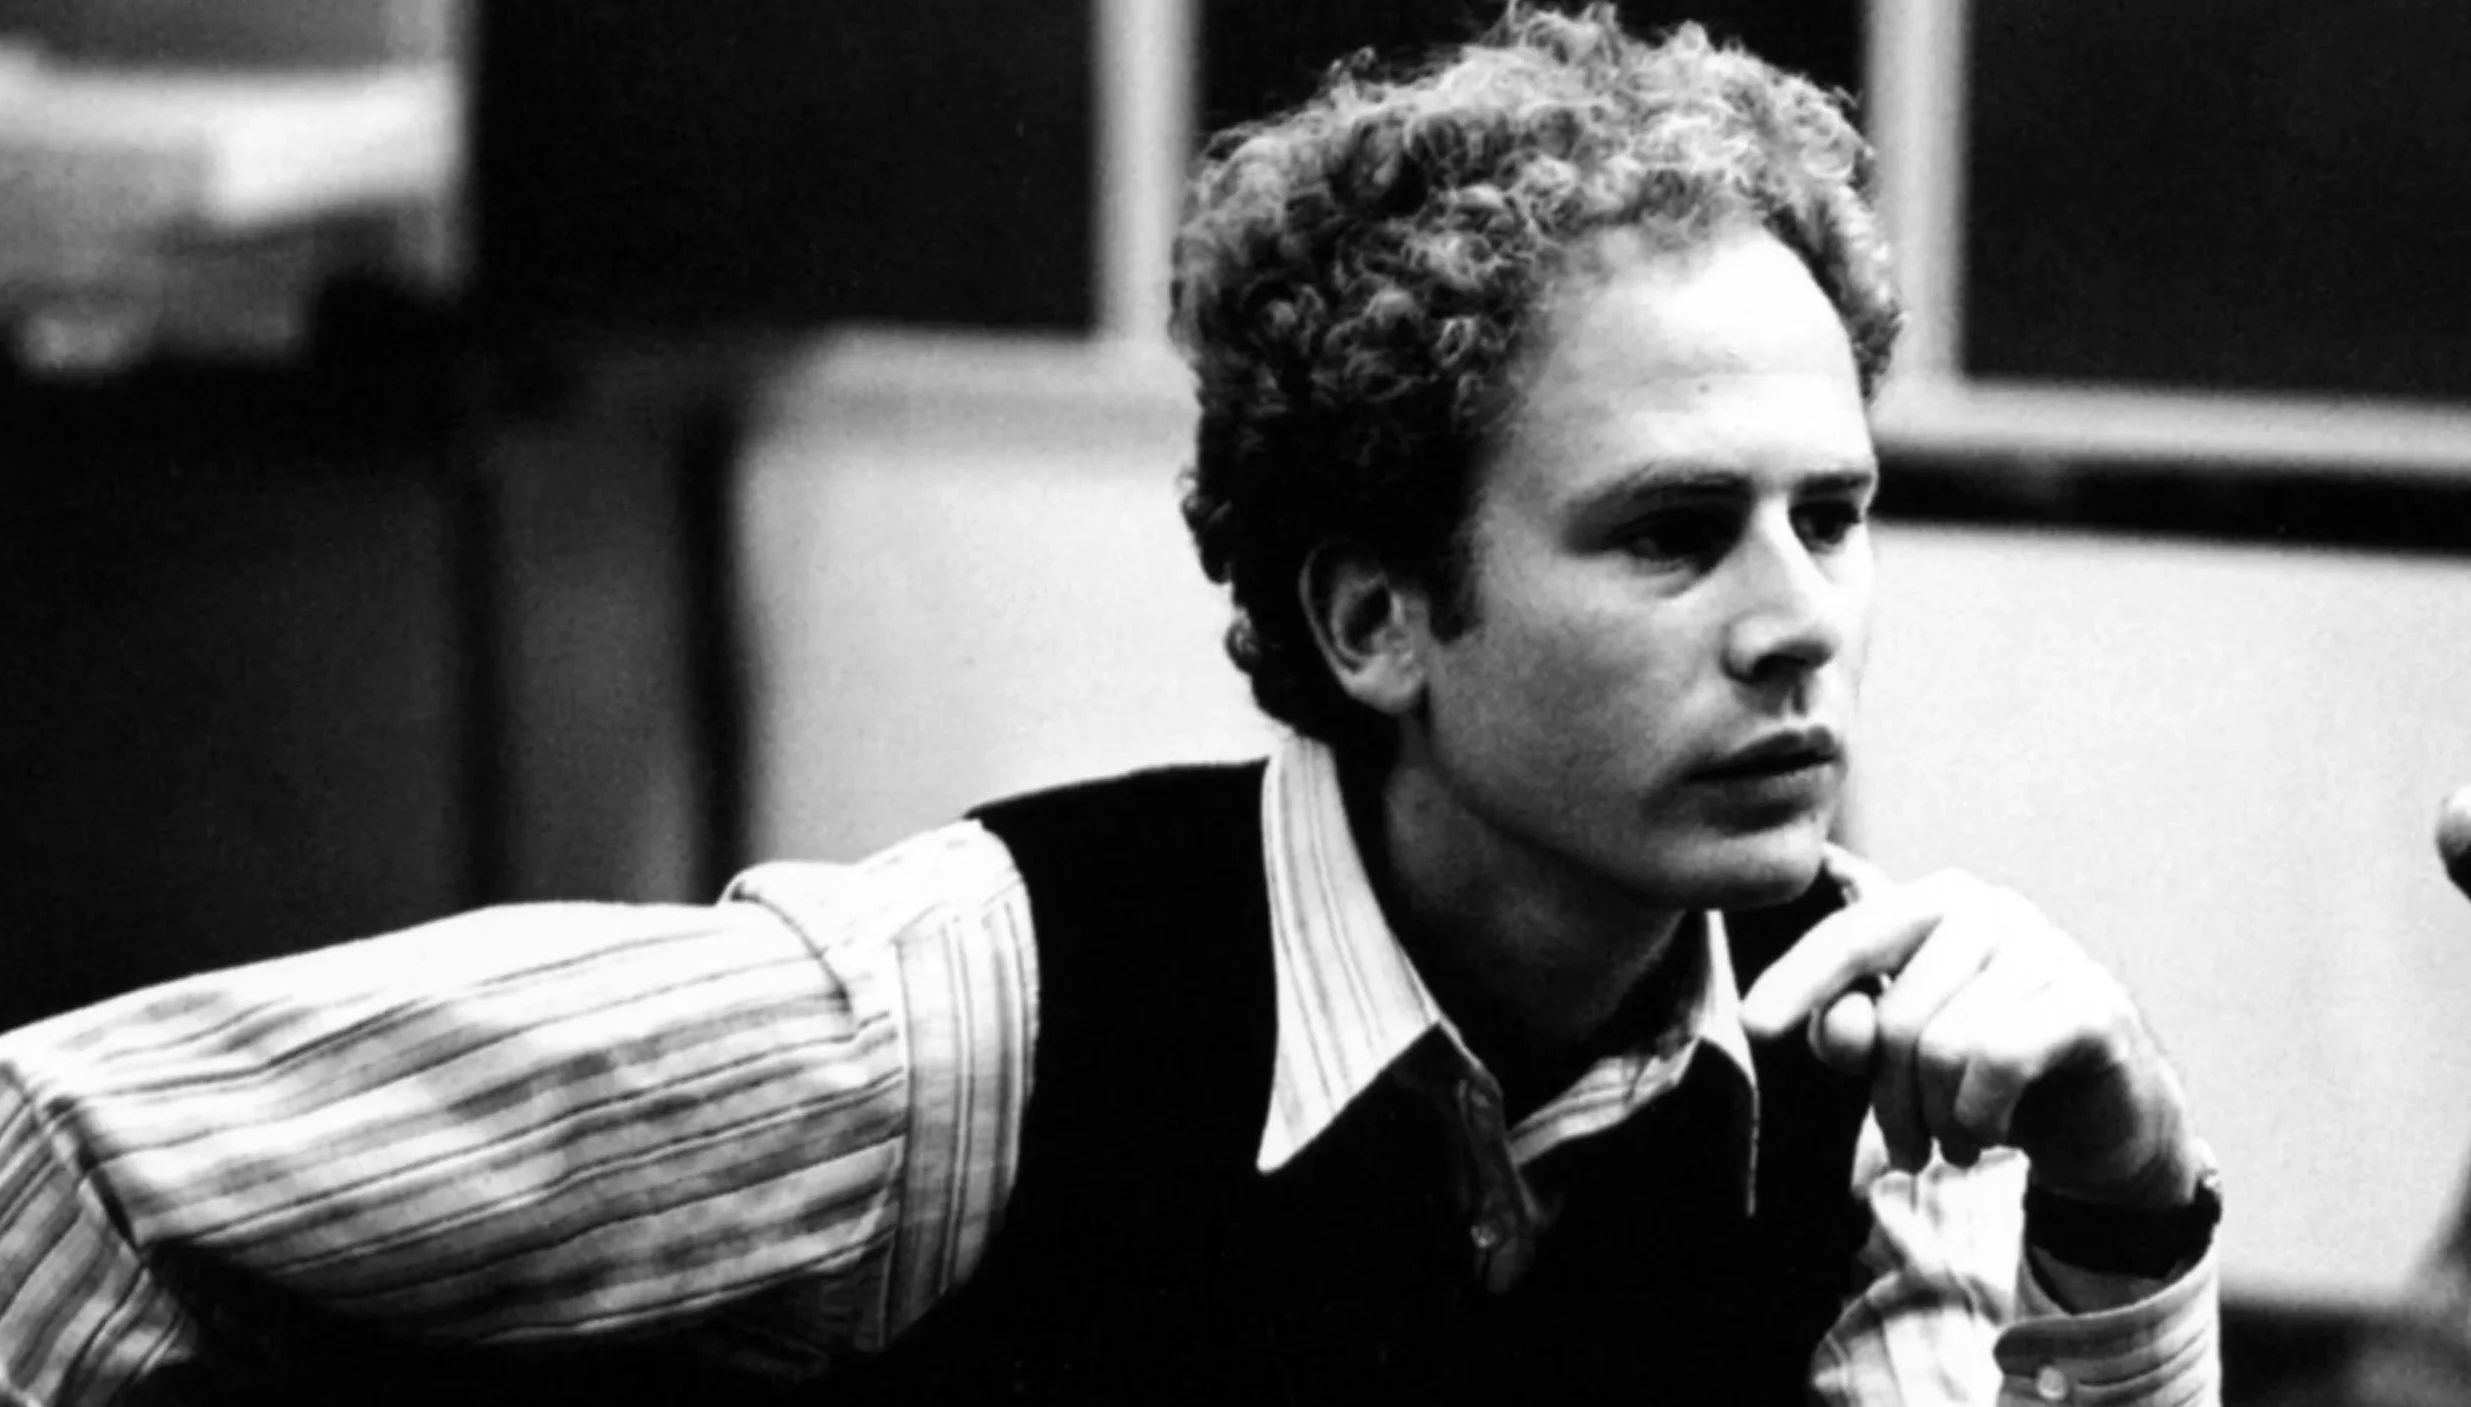 who is Art Garfunkel